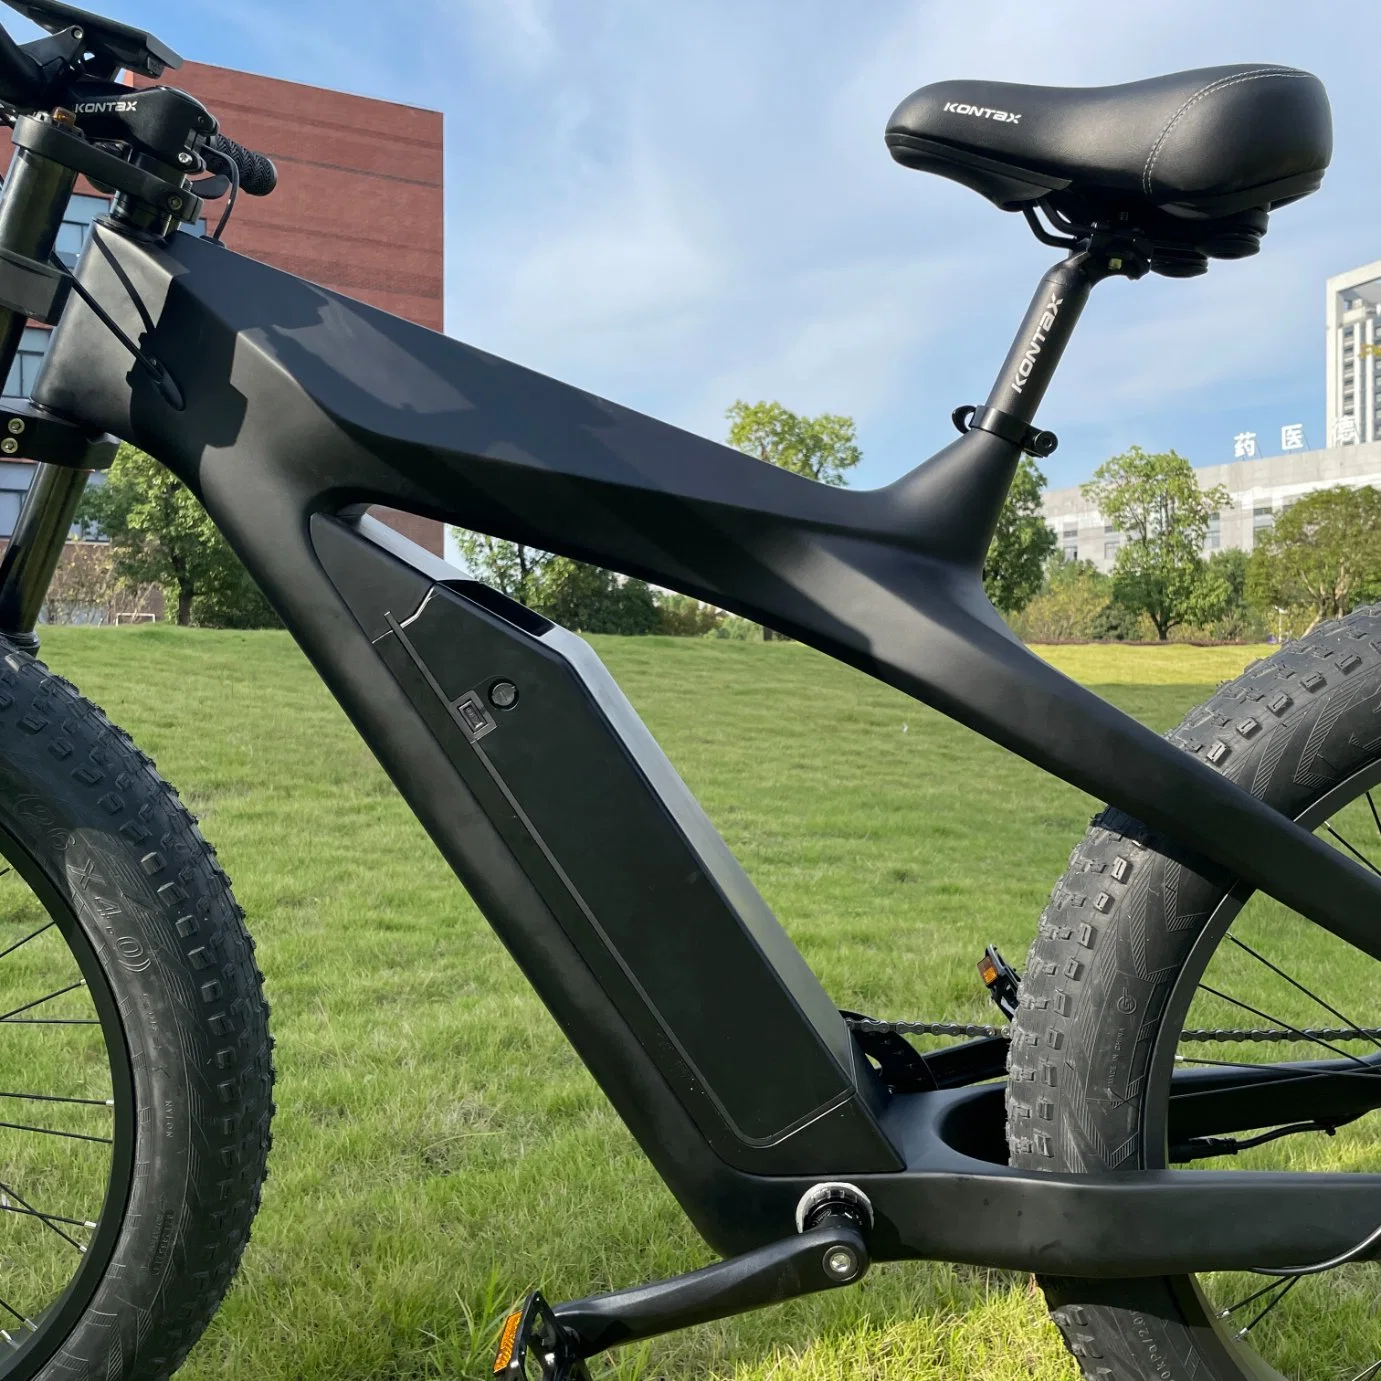 Kontax 48V13ah Bicicletas electrónicas 1000W Ebike em fibra de carbono gordura bicicletas auxiliar do pedal de bicicletas eléctricas da Roda